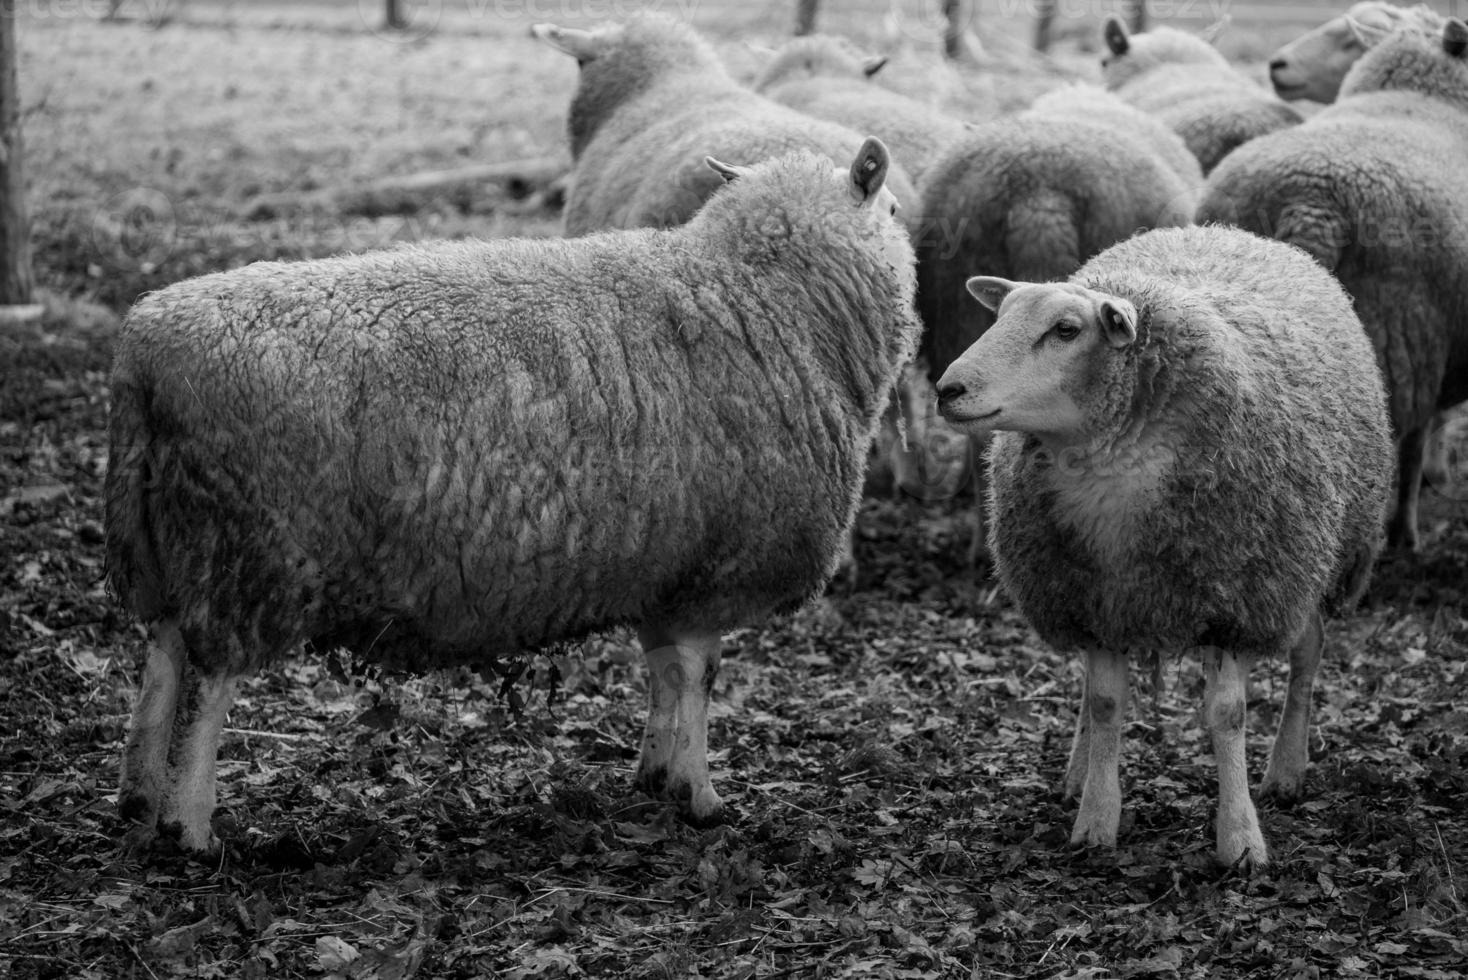 Schafe auf einem Feld in Deutschland foto